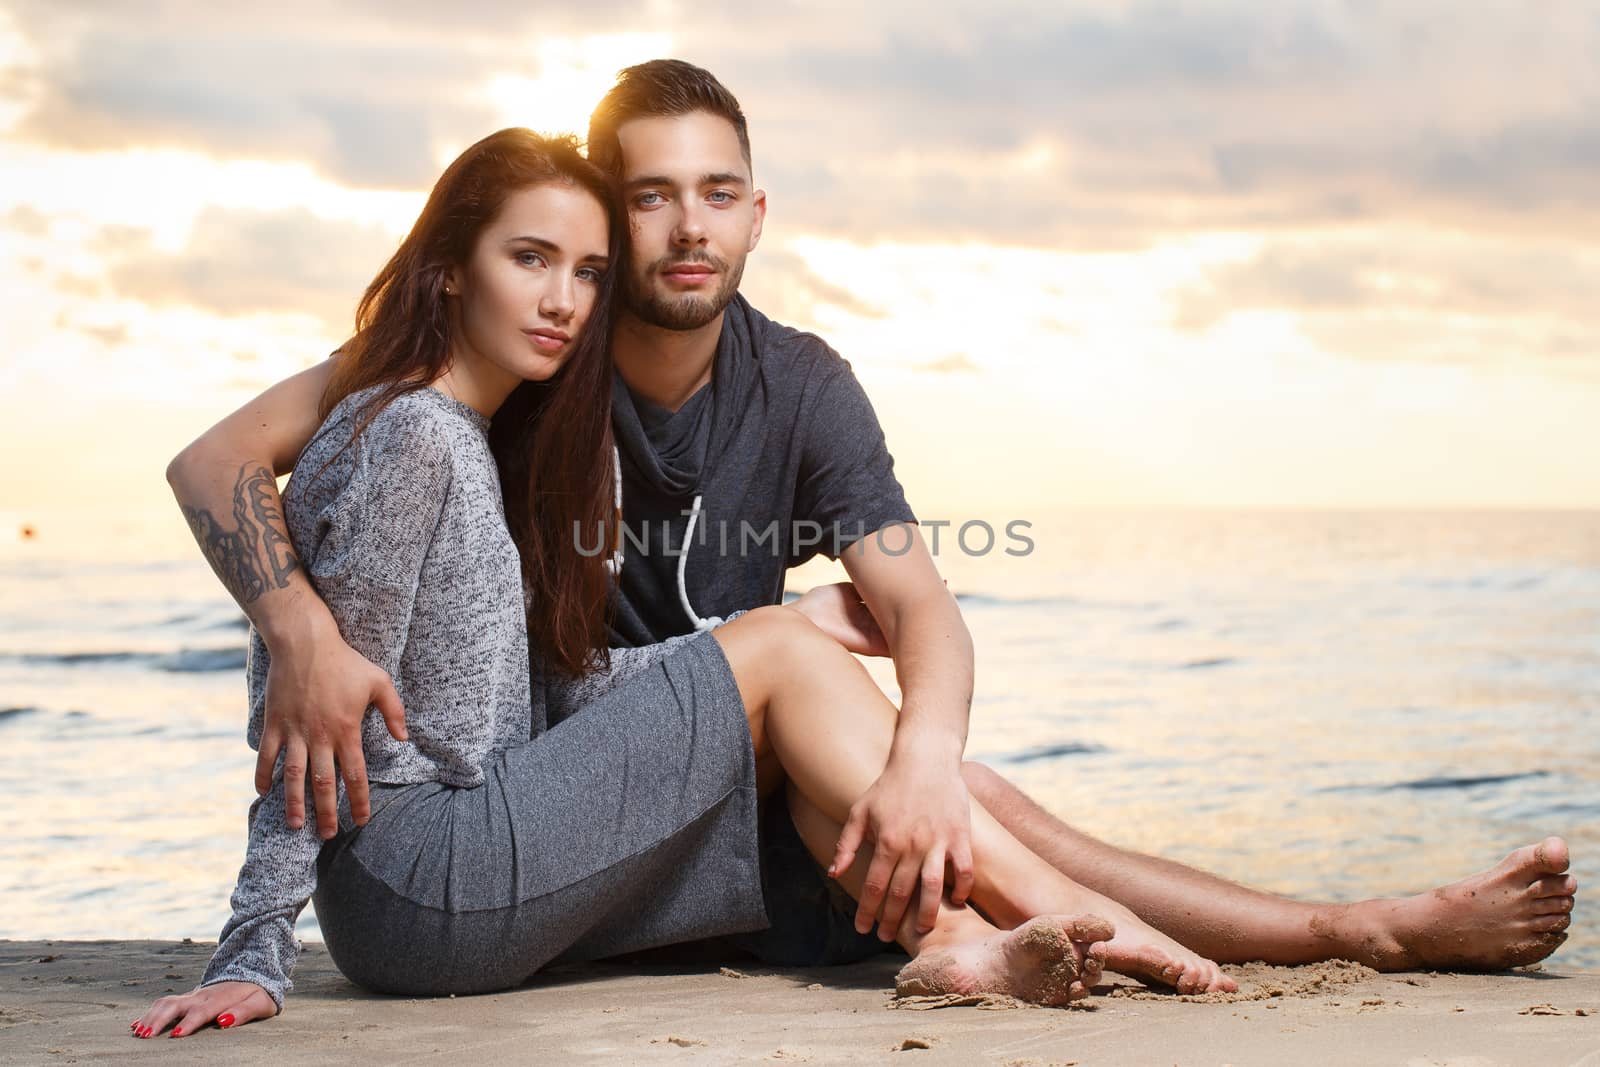 Beautiful couple on the beach by rufatjumali